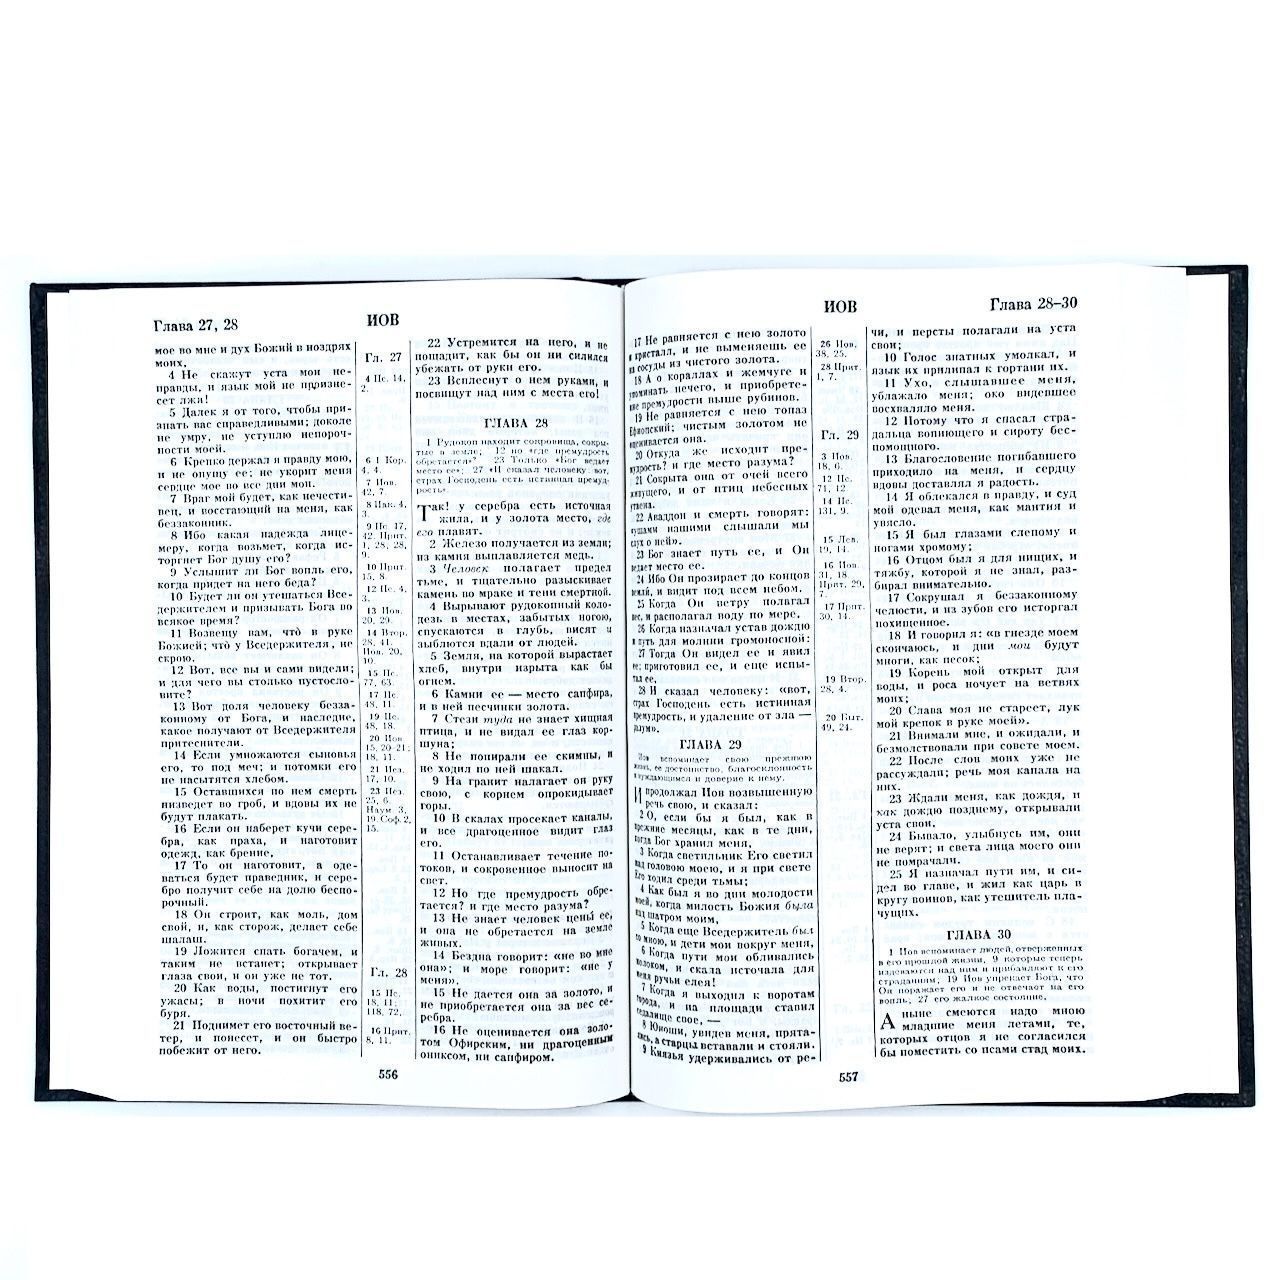 Библия 073 формат, цвет черный, надпись "Библия", твердый перплет, размер 160*230 мм, паралельные места в середине, крупный шрифт (14 кегель)